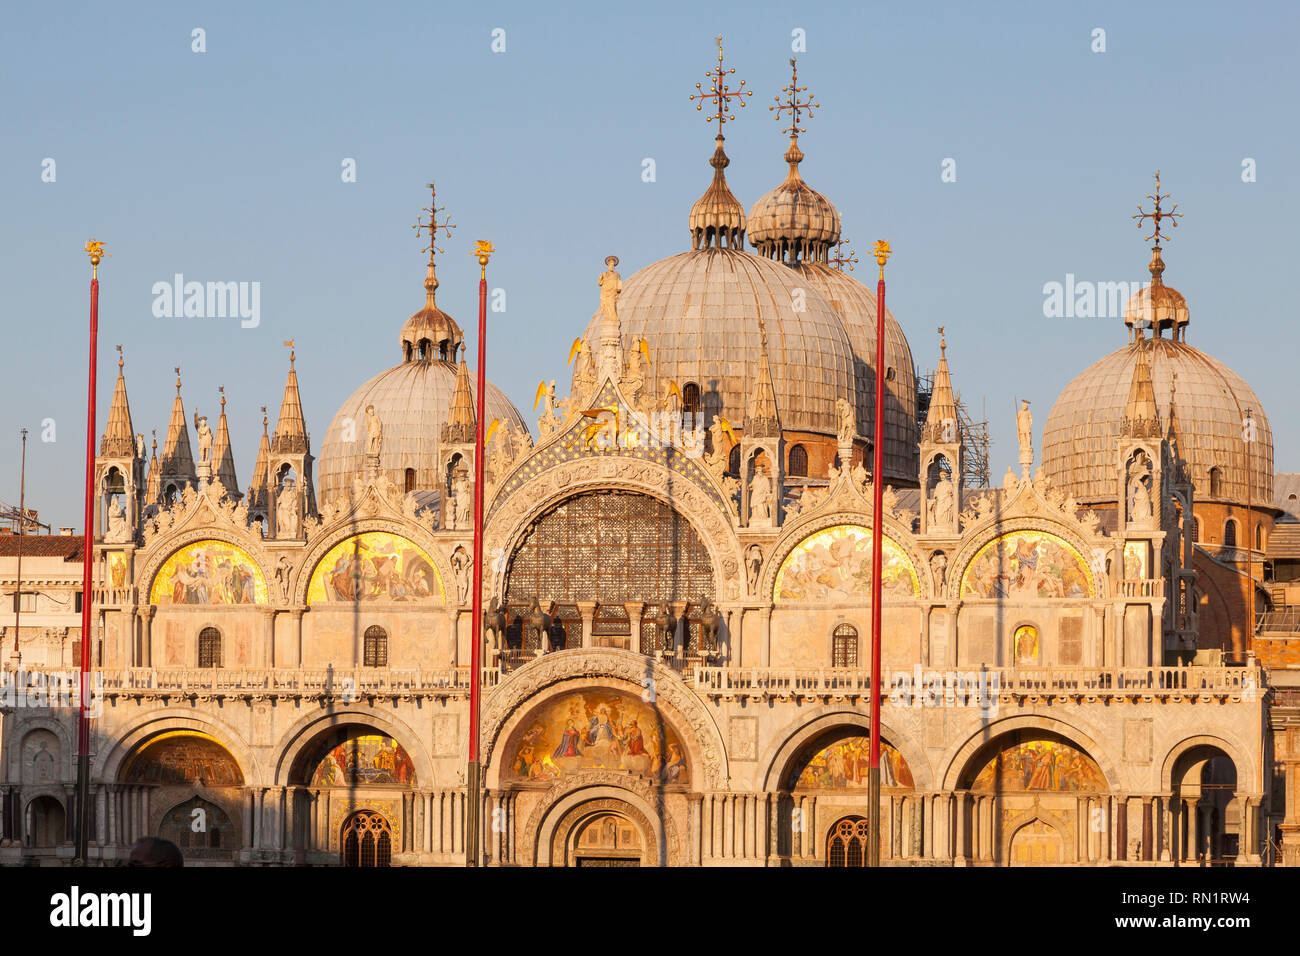 Basilica di San Marco al tramonto, Venezia, Veneto, Italia con una luce dorata e messa a fuoco per la metà superiore della cattedrale con i mosaici e le cupole Foto Stock